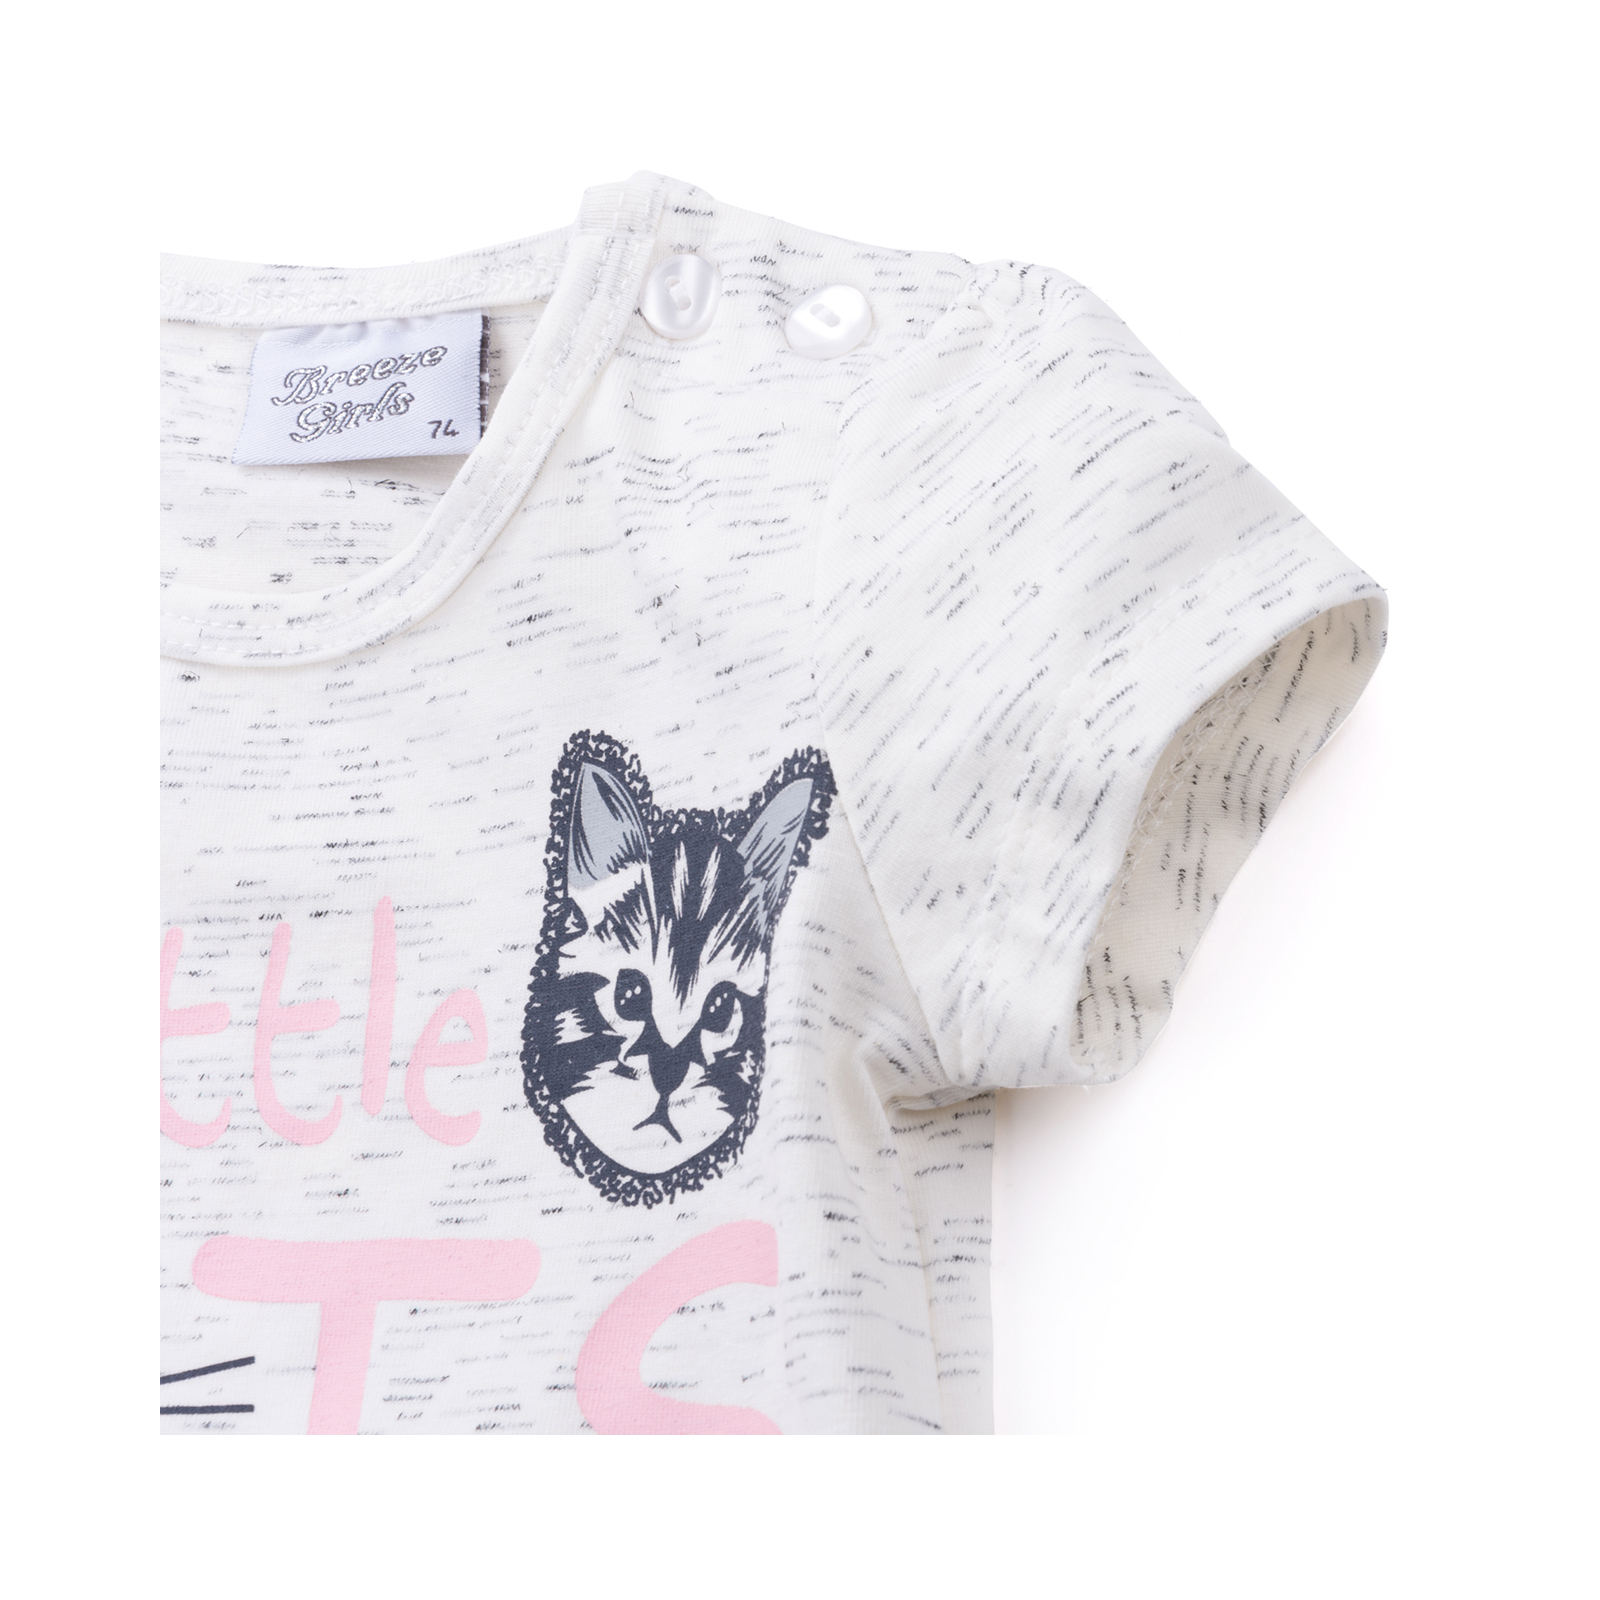 Набор детской одежды Breeze футболка с котиком и штанишки с кармашками (8983-86G-cream) изображение 5